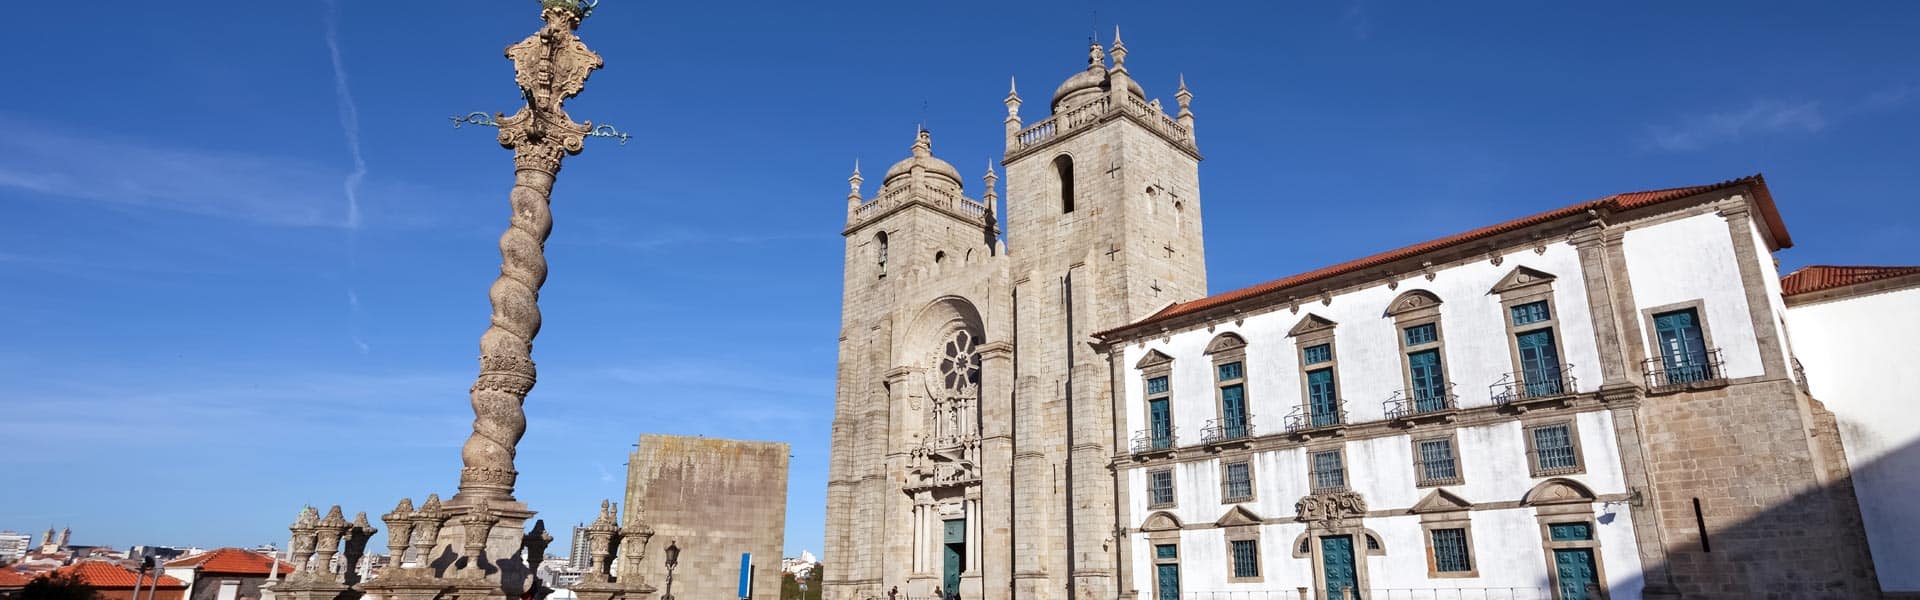 Se Catedral liegt in der Altstadt von Porto, die seit 1996 als Weltkulturerbe der UNESCO gilt.